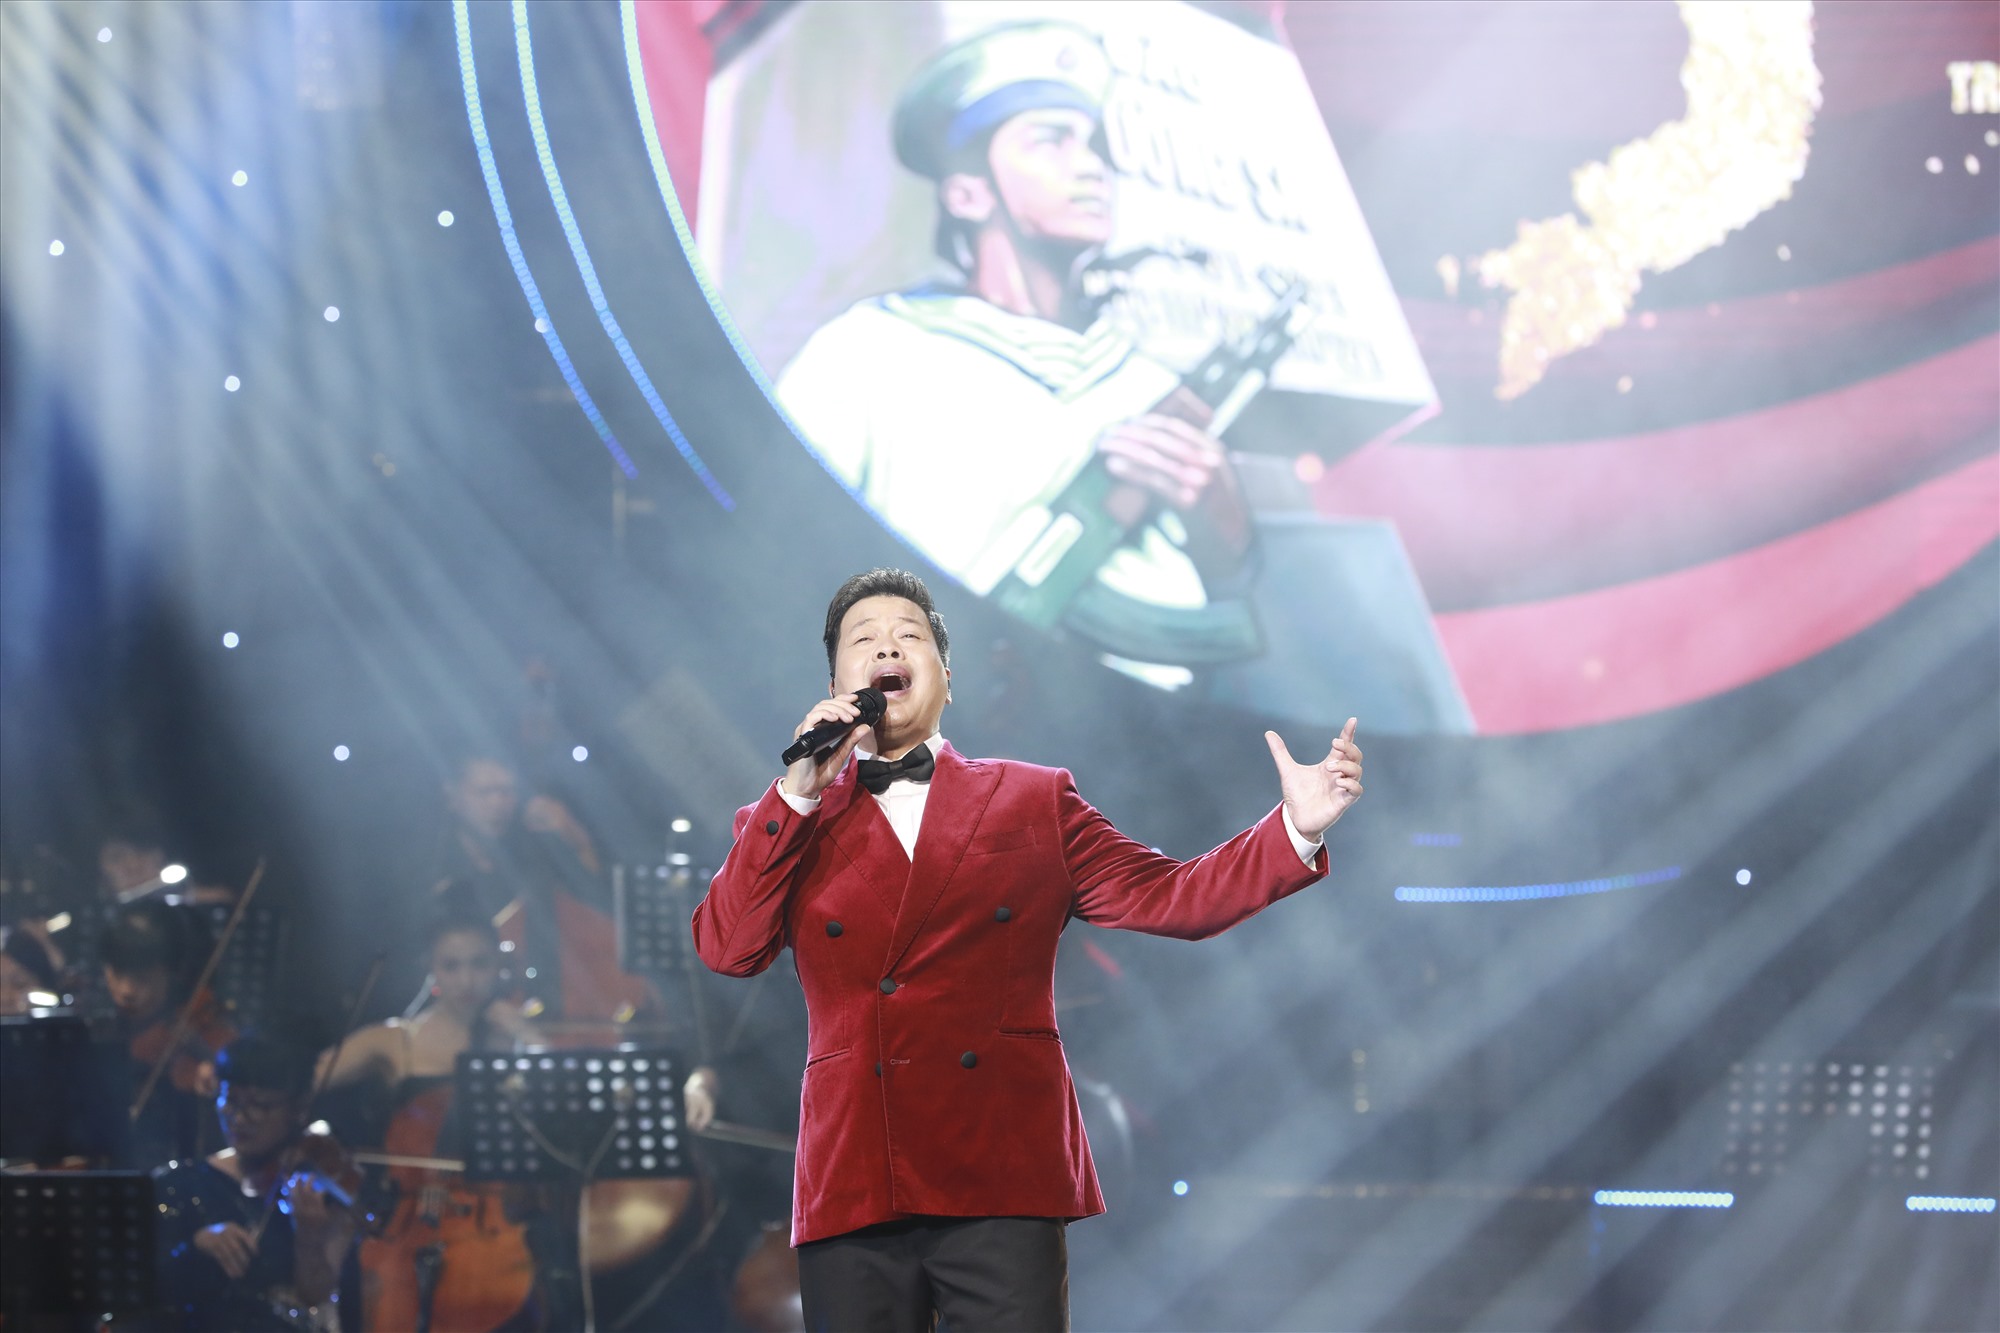 NSƯT Đăng Dương gửi tặng khán giả nhiều ca khúc gắn liền tên tuổi nhưng được làm mới bởi nhạc sĩ Dương Cầm. Ảnh: Nhân vật cung cấp 